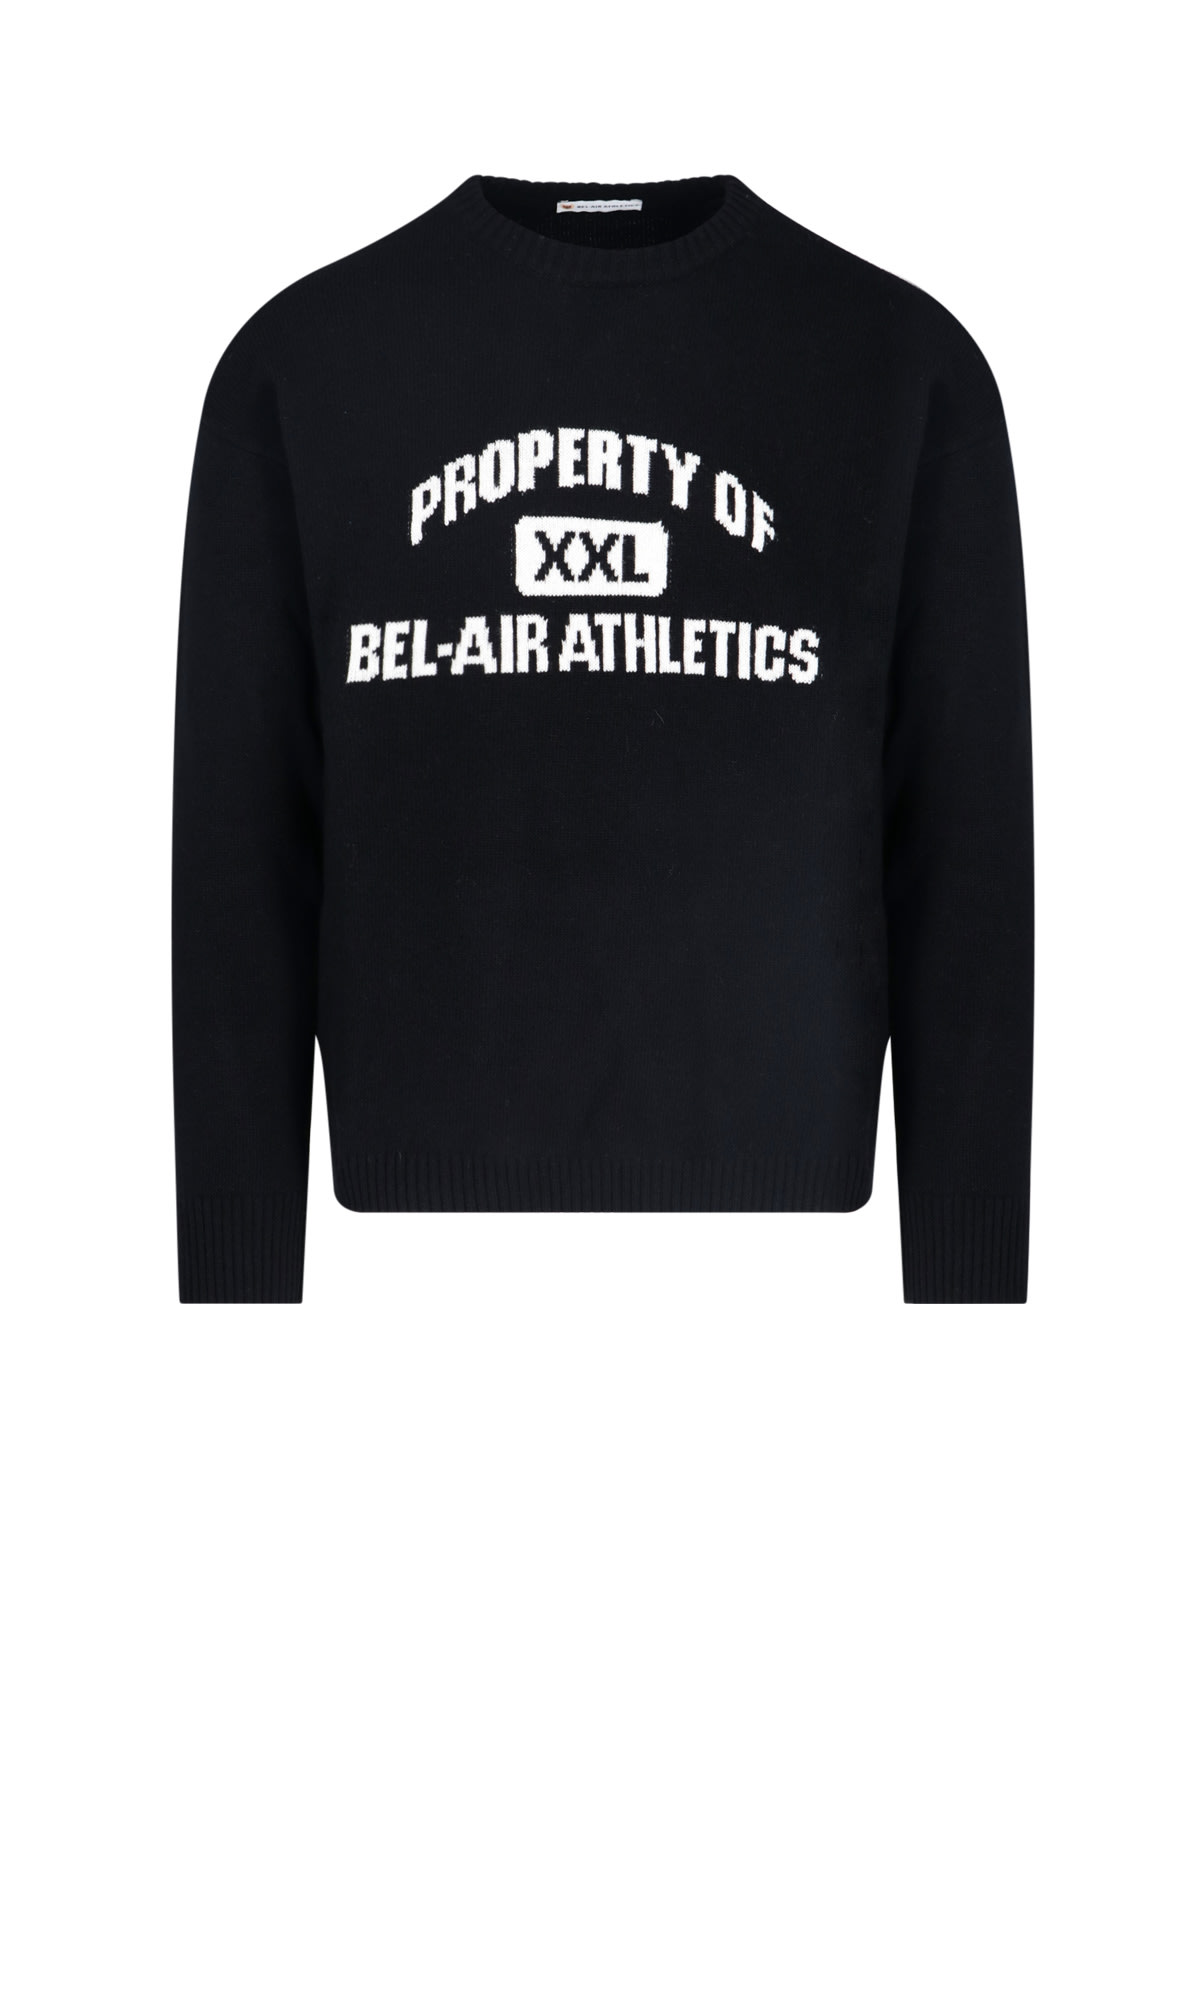 Bel-Air Athletics Sweater